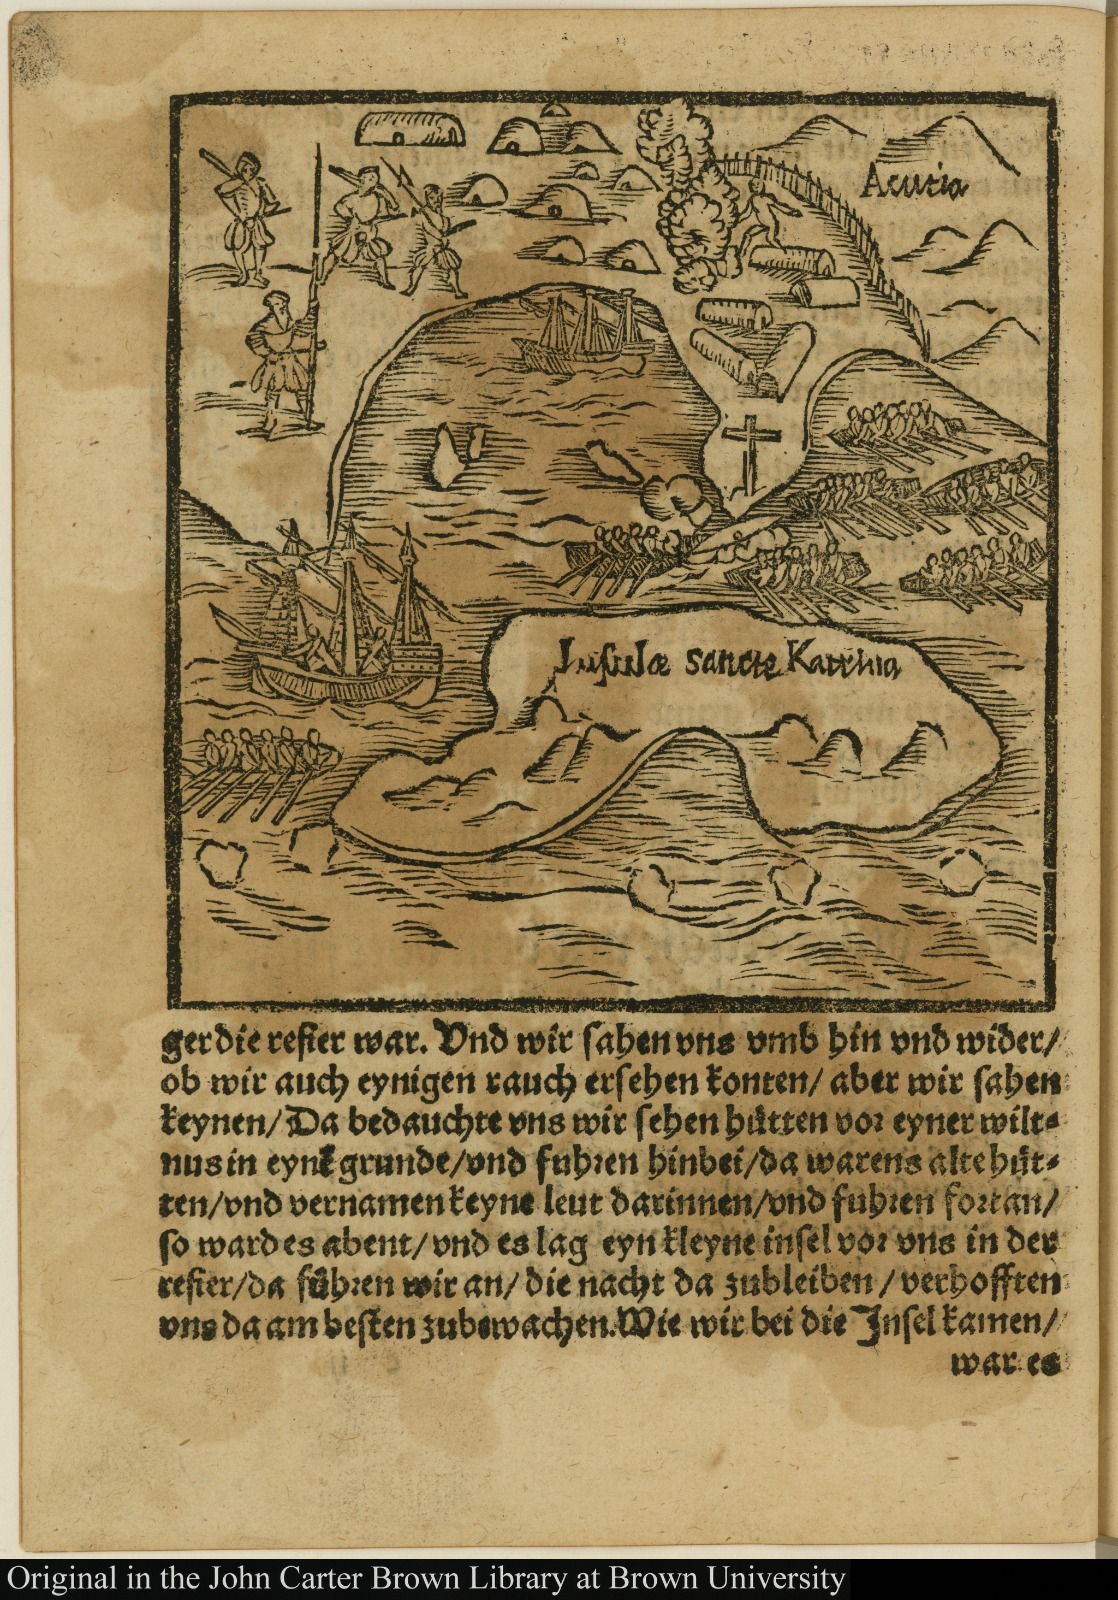 "Wie unser etlicke mit dem bott fuhren den bauingen zubestchtigen", publicada em 1557 Andres Kolben 